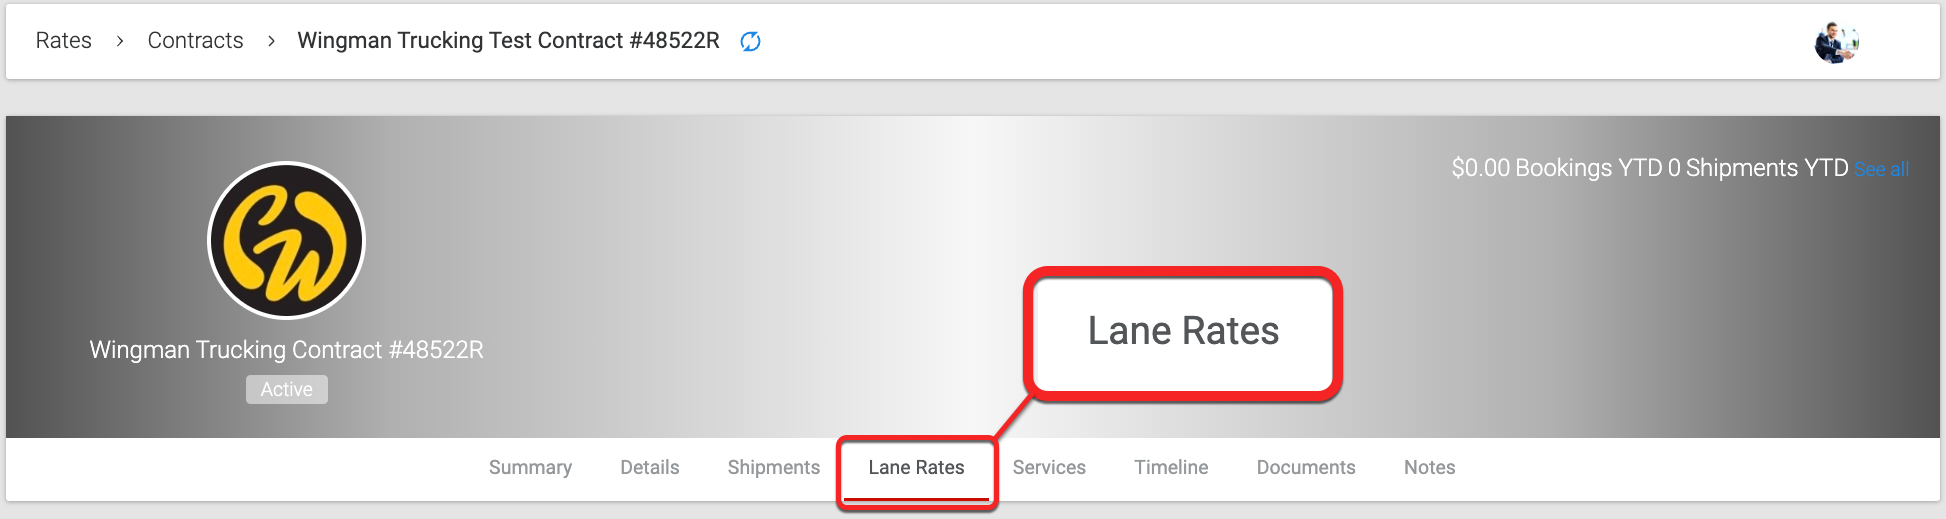 2_-_Lane_rates_tab.png